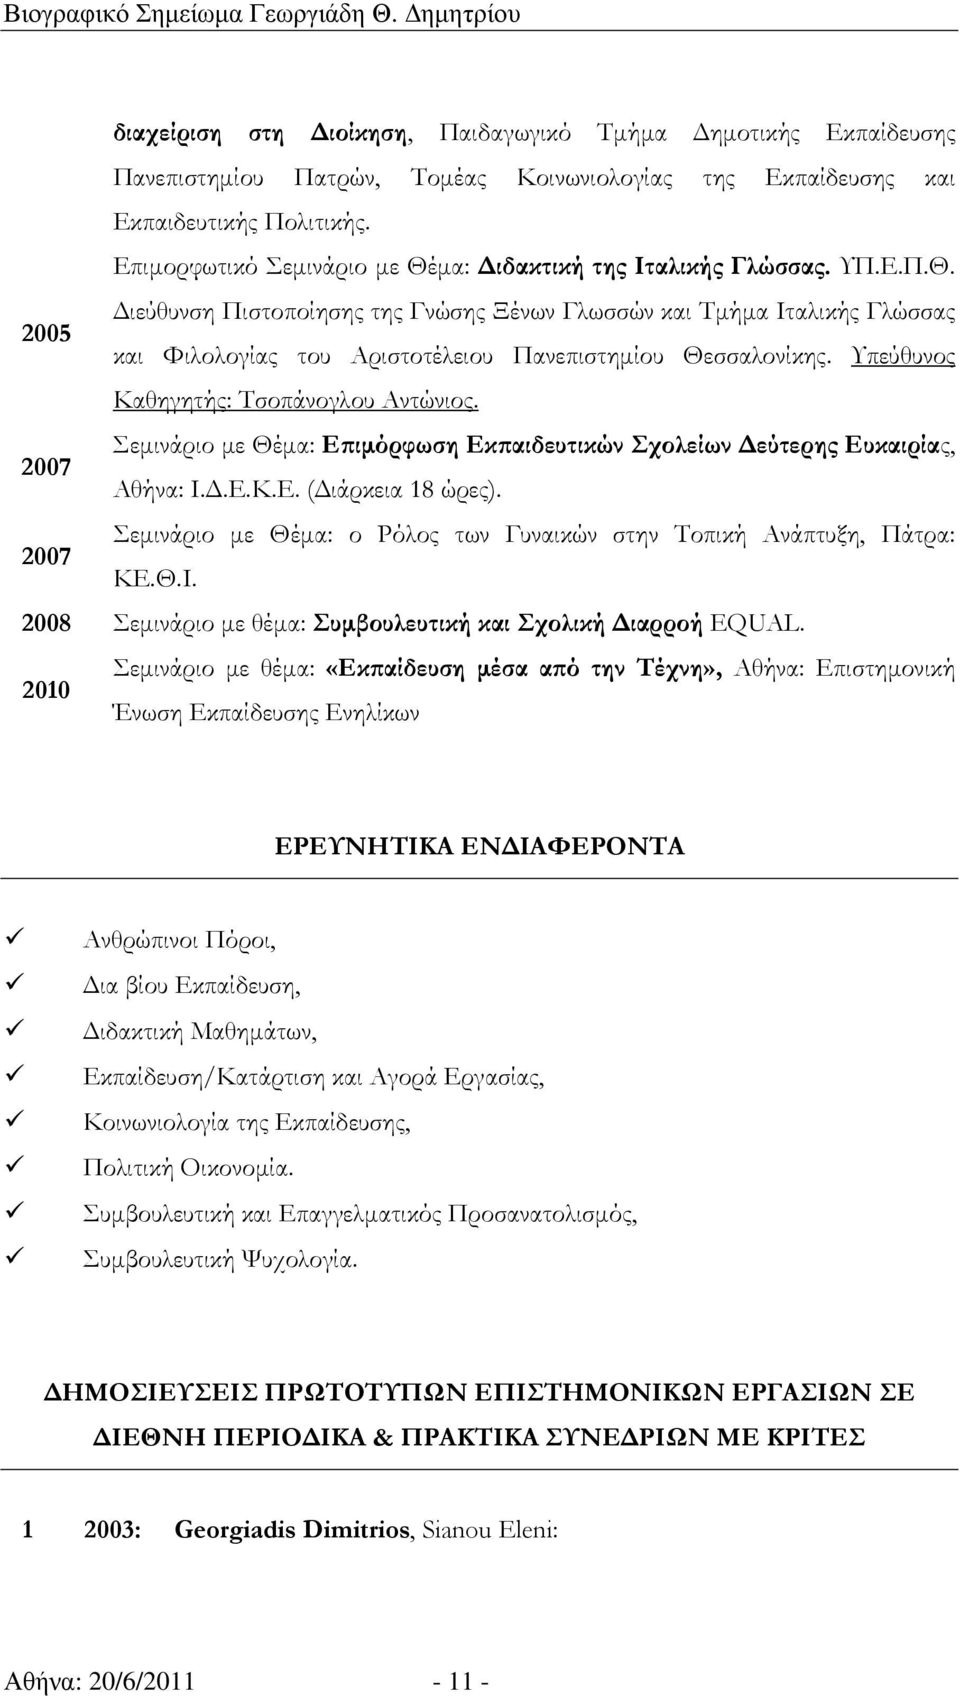 Υπεύθυνος Καθηγητής: Τσοπάνογλου Αντώνιος. 2007 Σεµινάριο µε Θέµα: Εϖιµόρφωση Εκϖαιδευτικών Σχολείων εύτερης Ευκαιρίας, Αθήνα: Ι..Ε.Κ.Ε. ( ιάρκεια 18 ώρες).